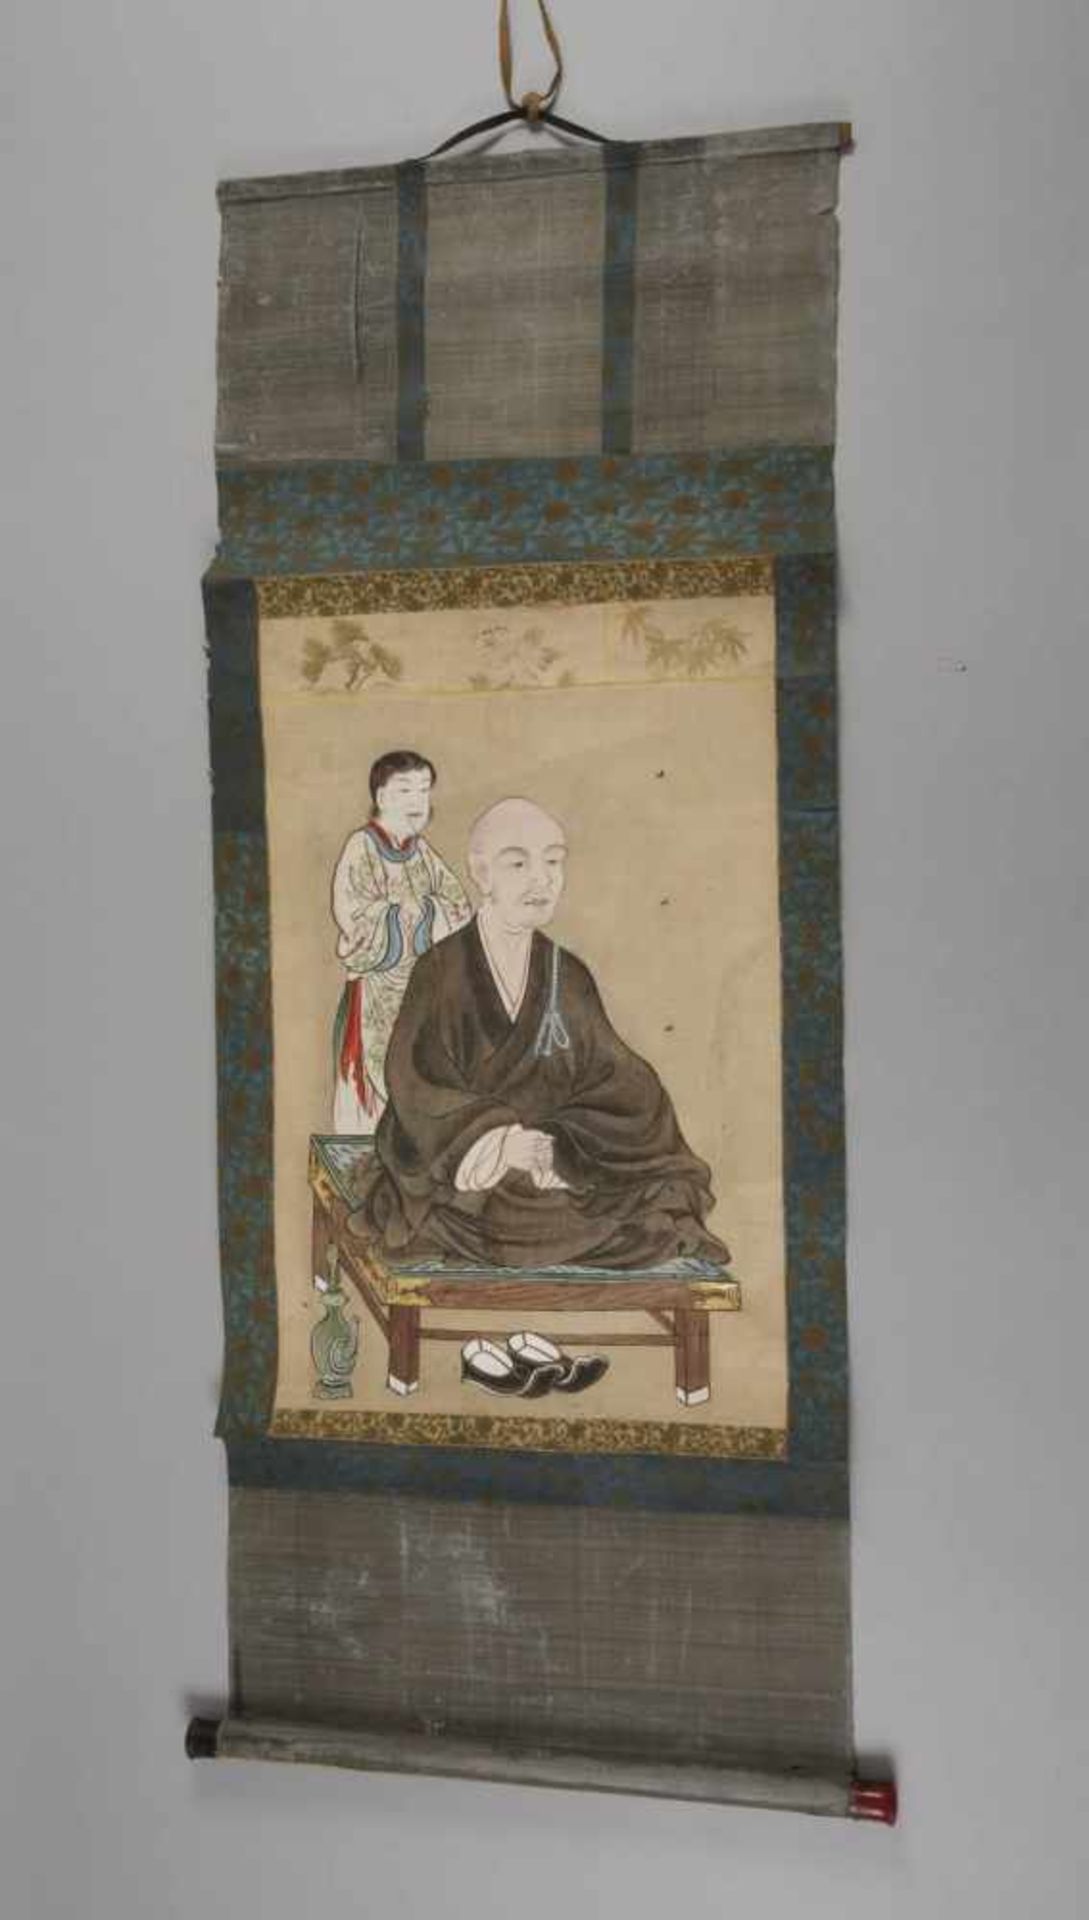 Zwei RollbilderJapan, 19. Jh., Mischtechnik auf Papier, Darstellung zweier sitzender Zen-Mönche, - Bild 3 aus 3